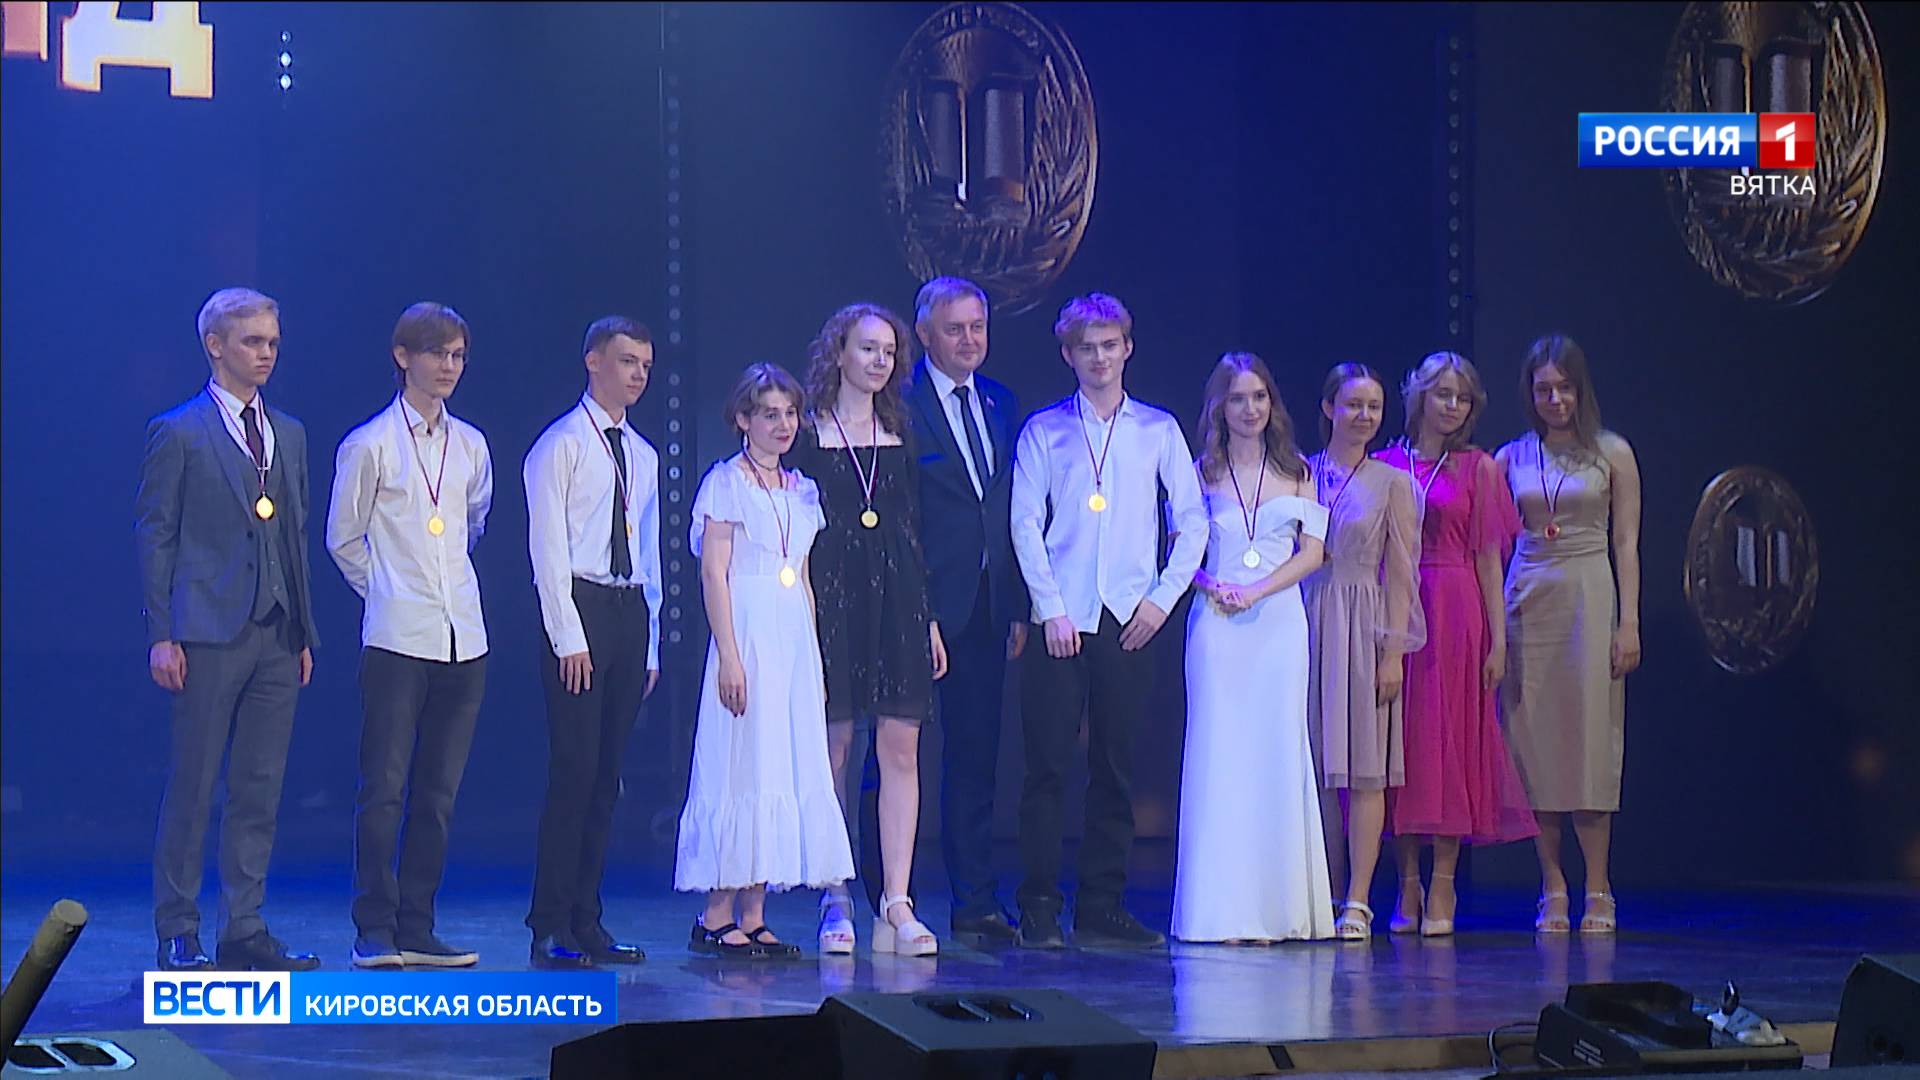 970 выпускников Кировской области награждены медалью «За особые успехи в учении»